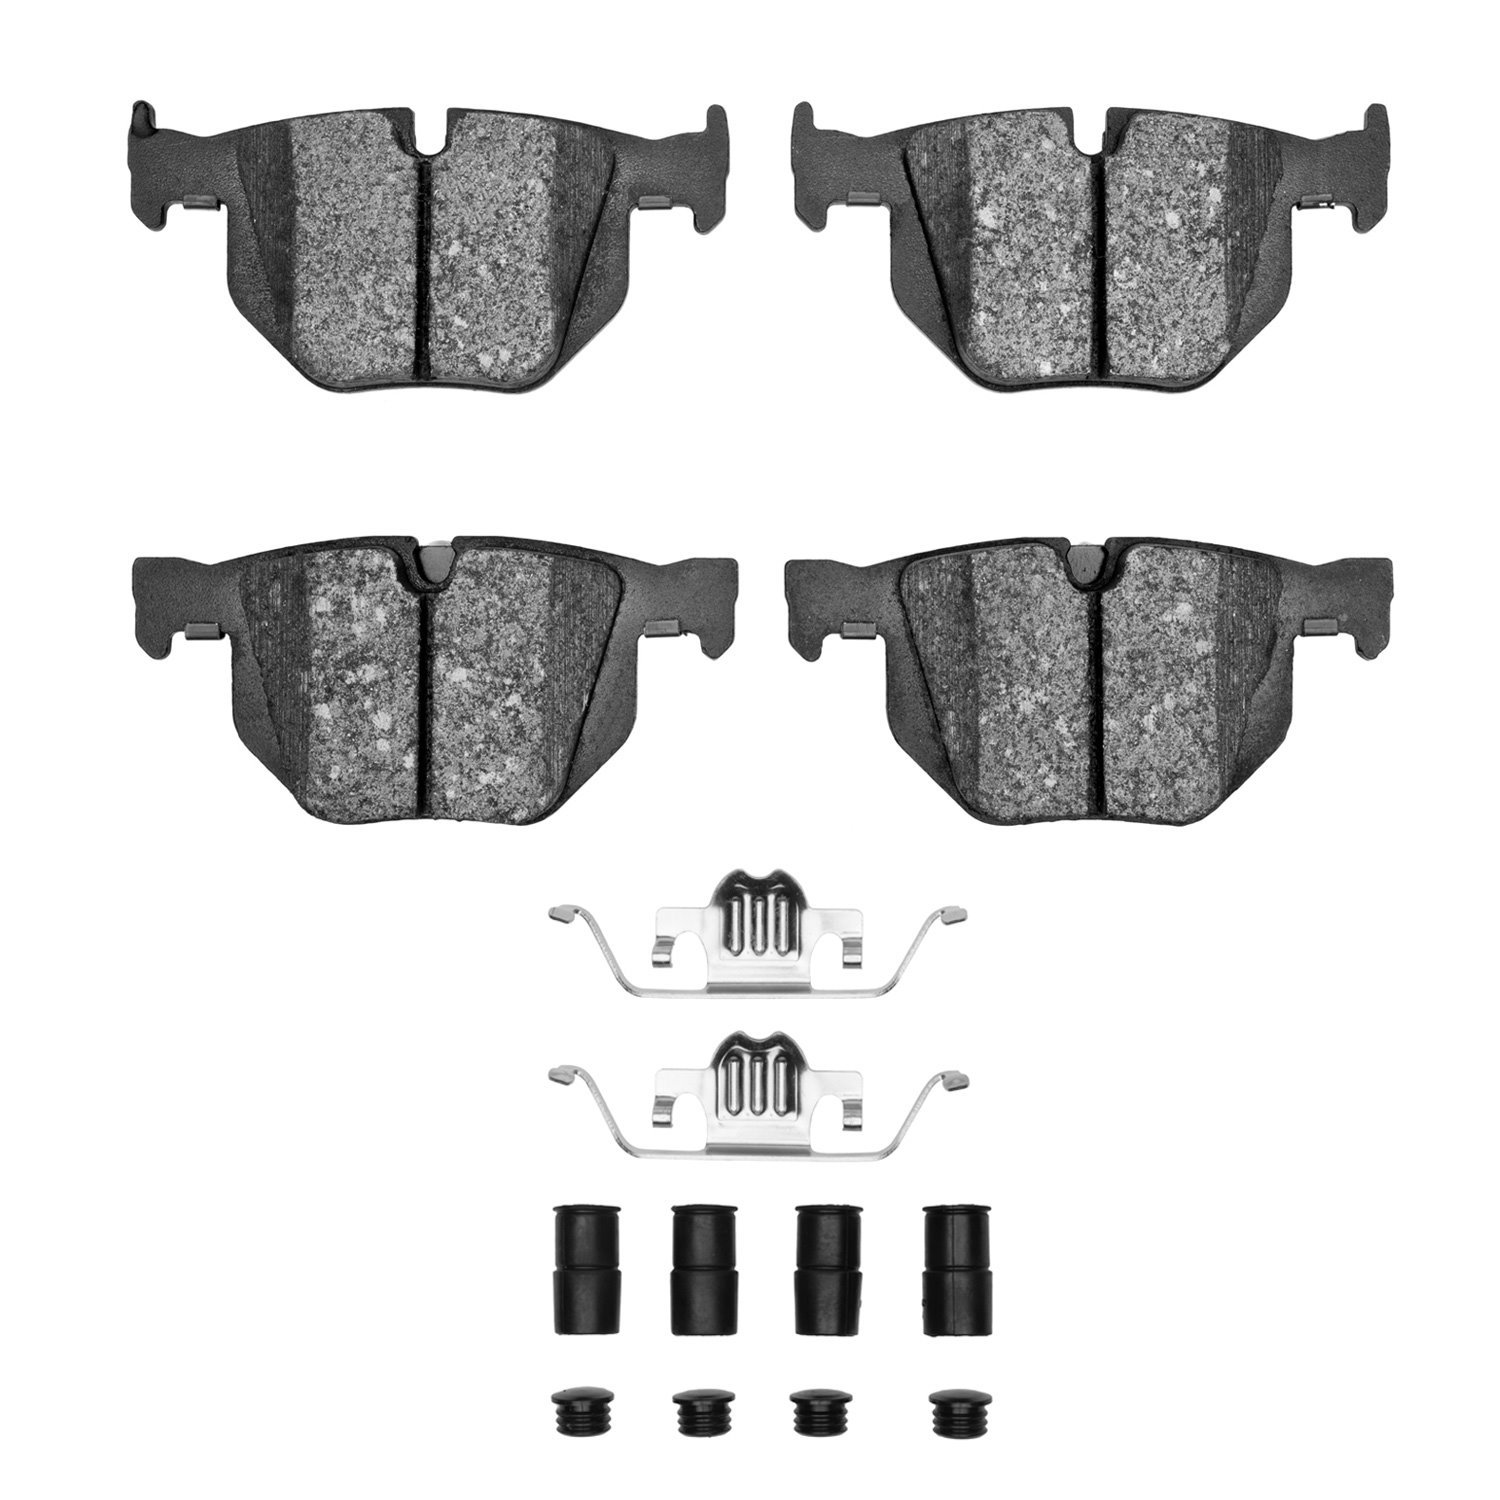 1600-1042-01 5000 Euro Ceramic Brake Pads & Hardware Kit, 2007-2019 BMW, Position: Rear